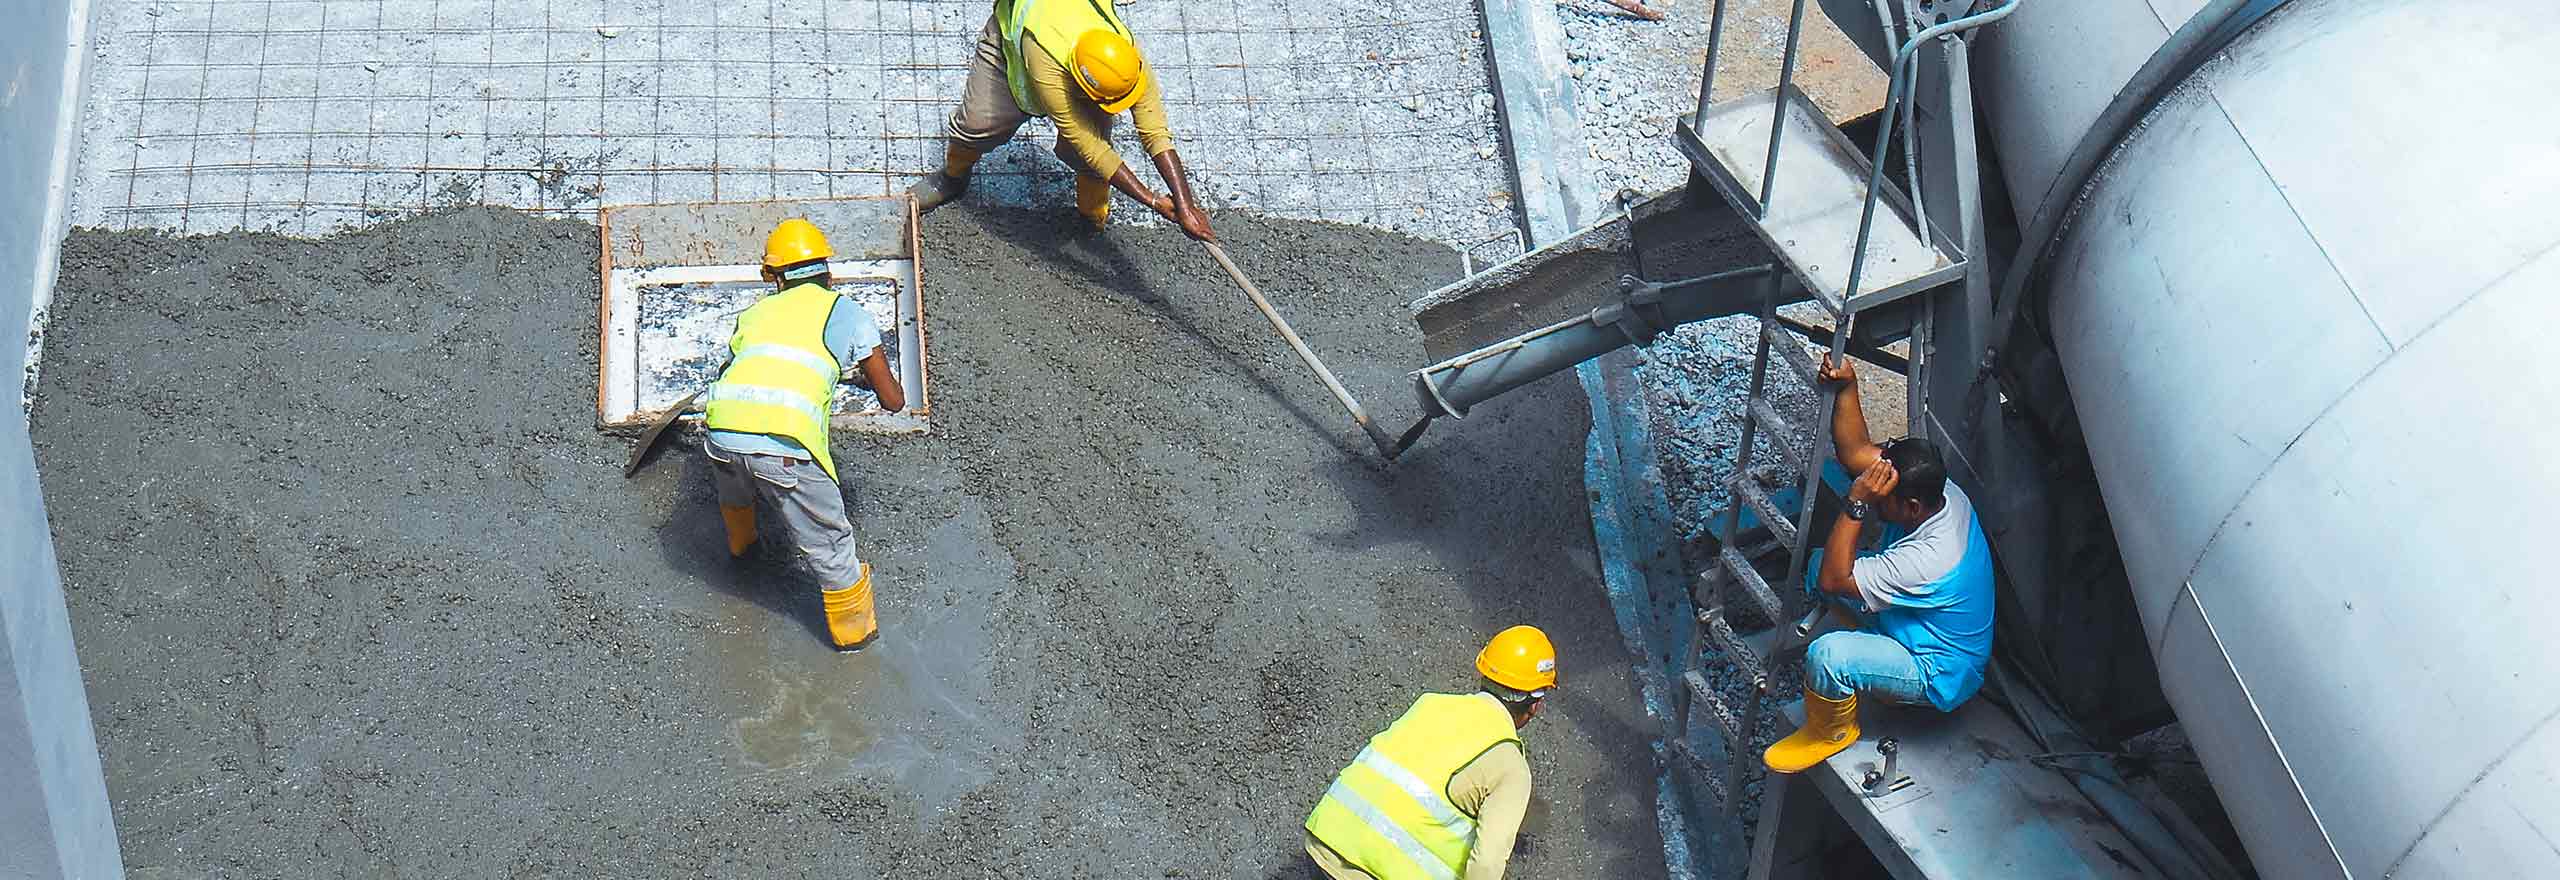 Operatori edili che utilizzano diverse apparecchiature per gettare e livellare una sezione di lastre di calcestruzzo.